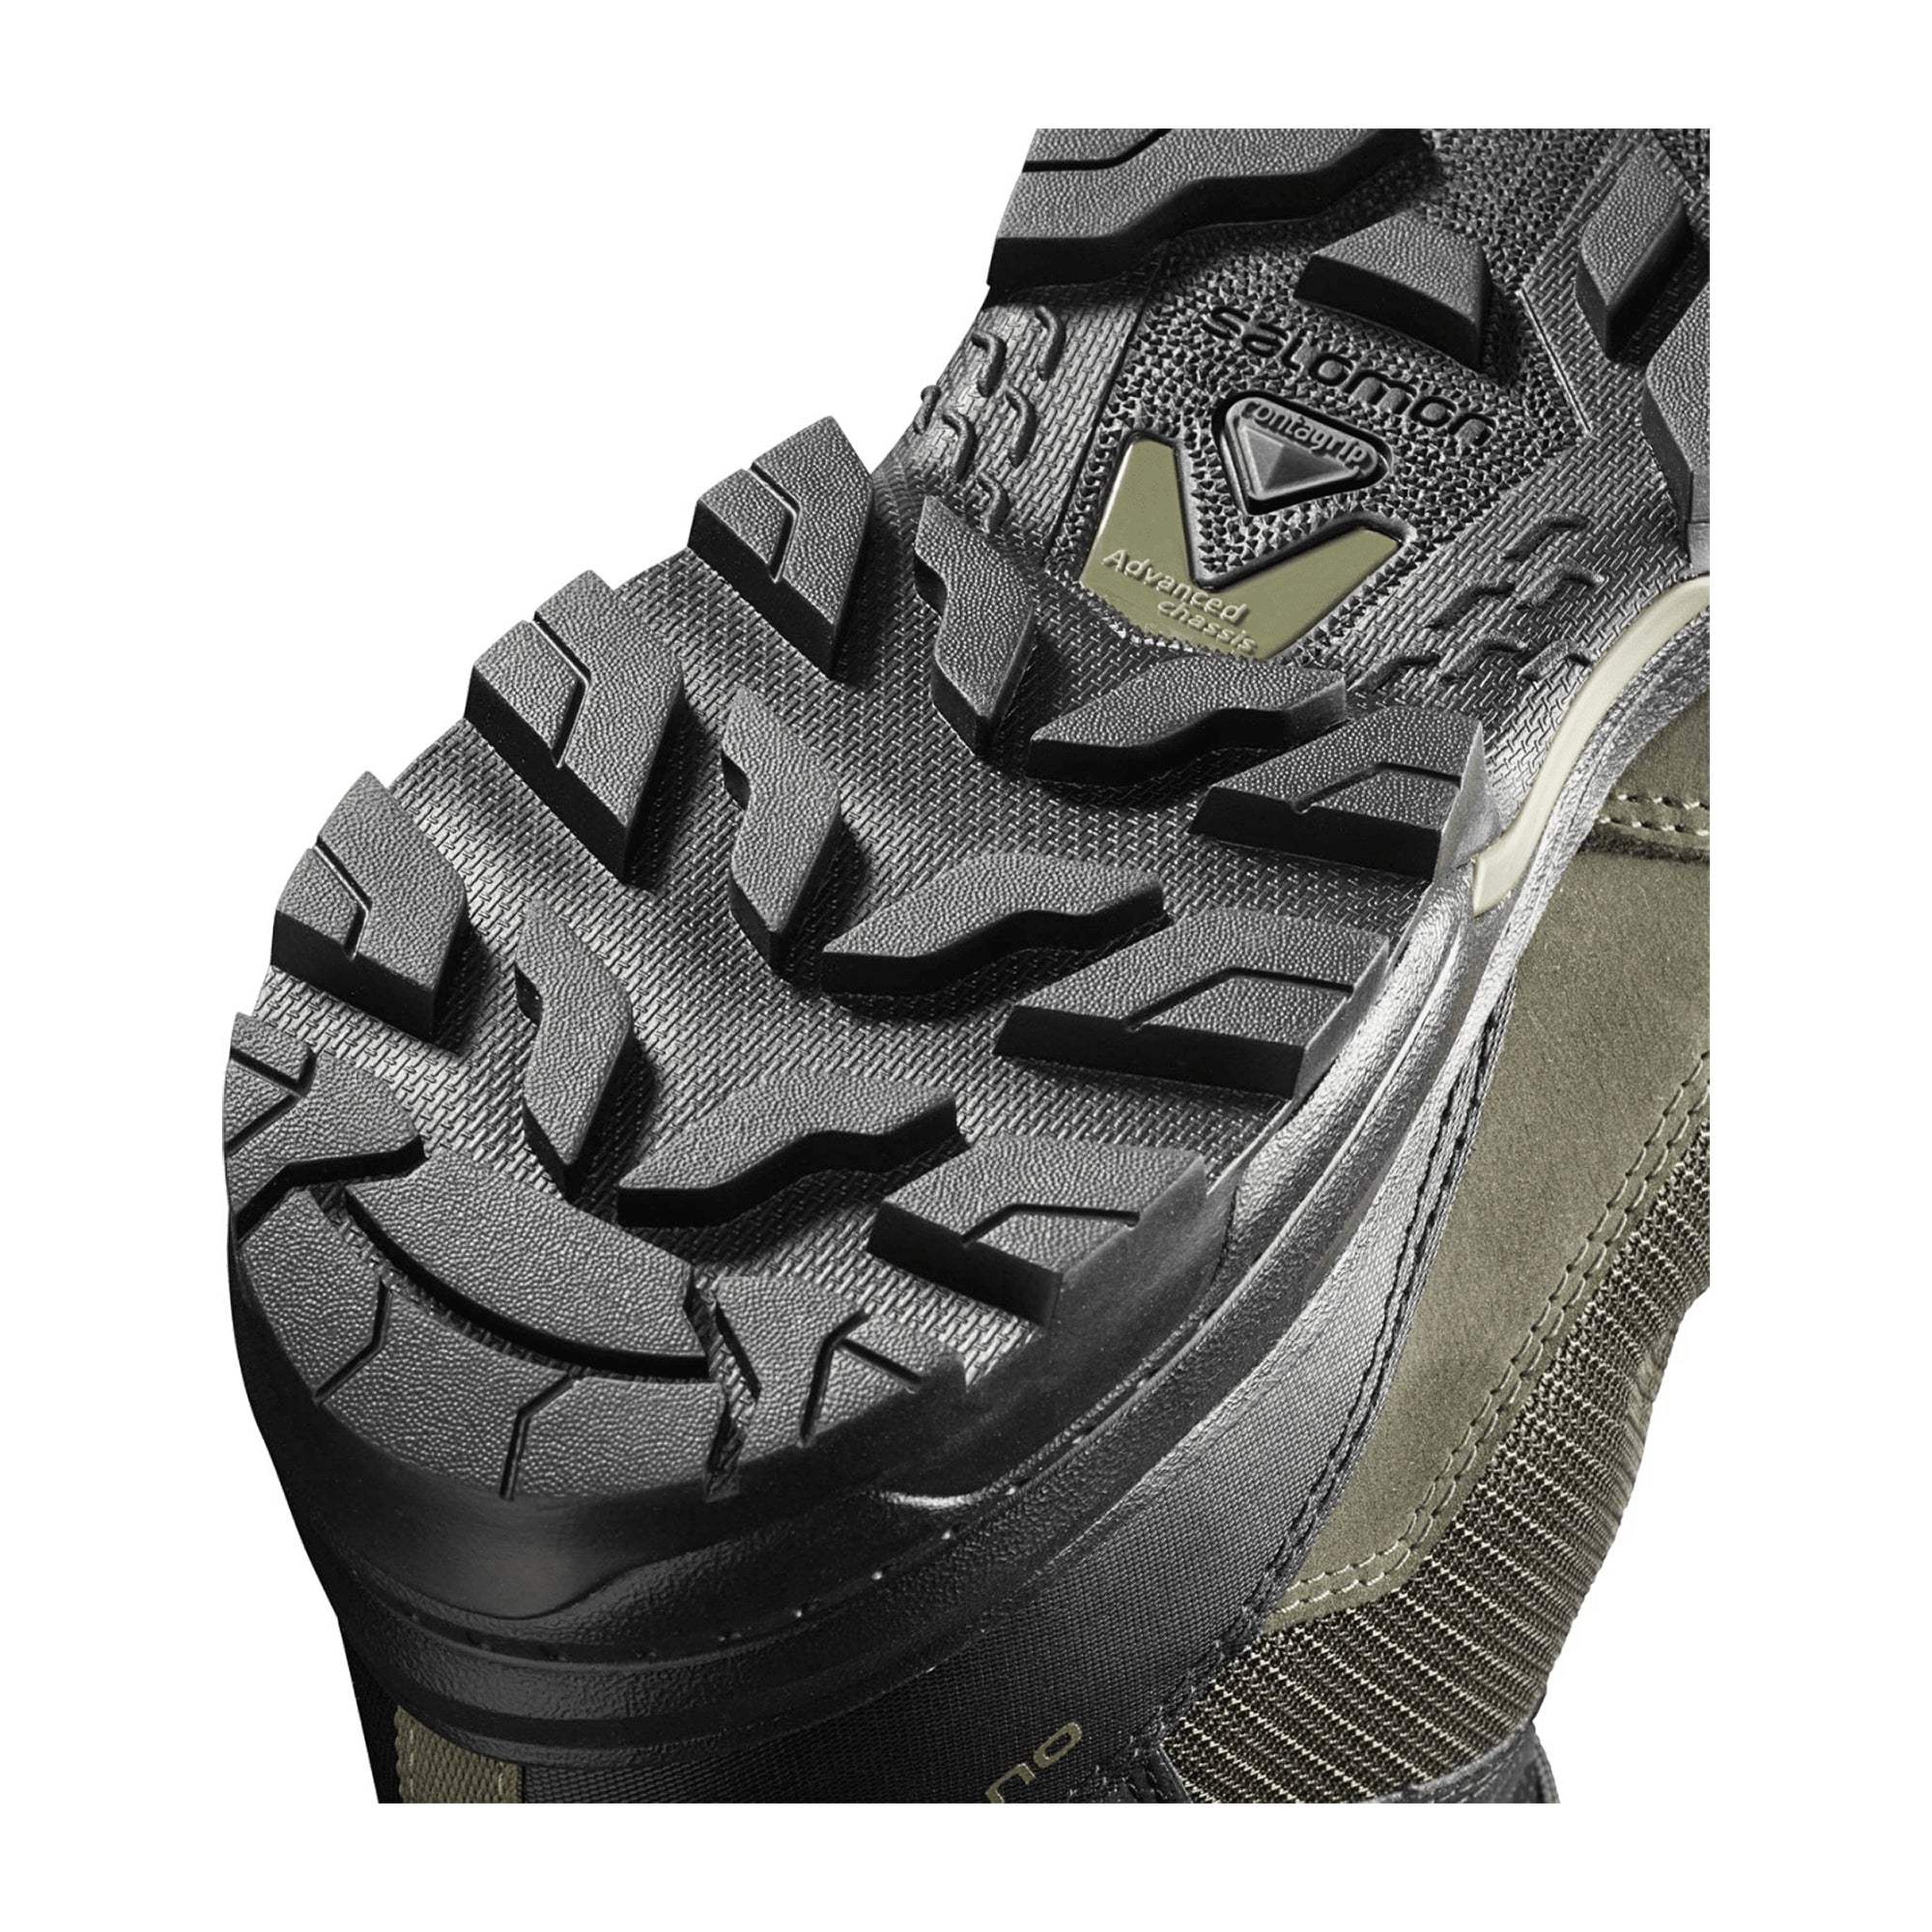 Salomon shoes OUTward GTX Peat/Black/ for men, black